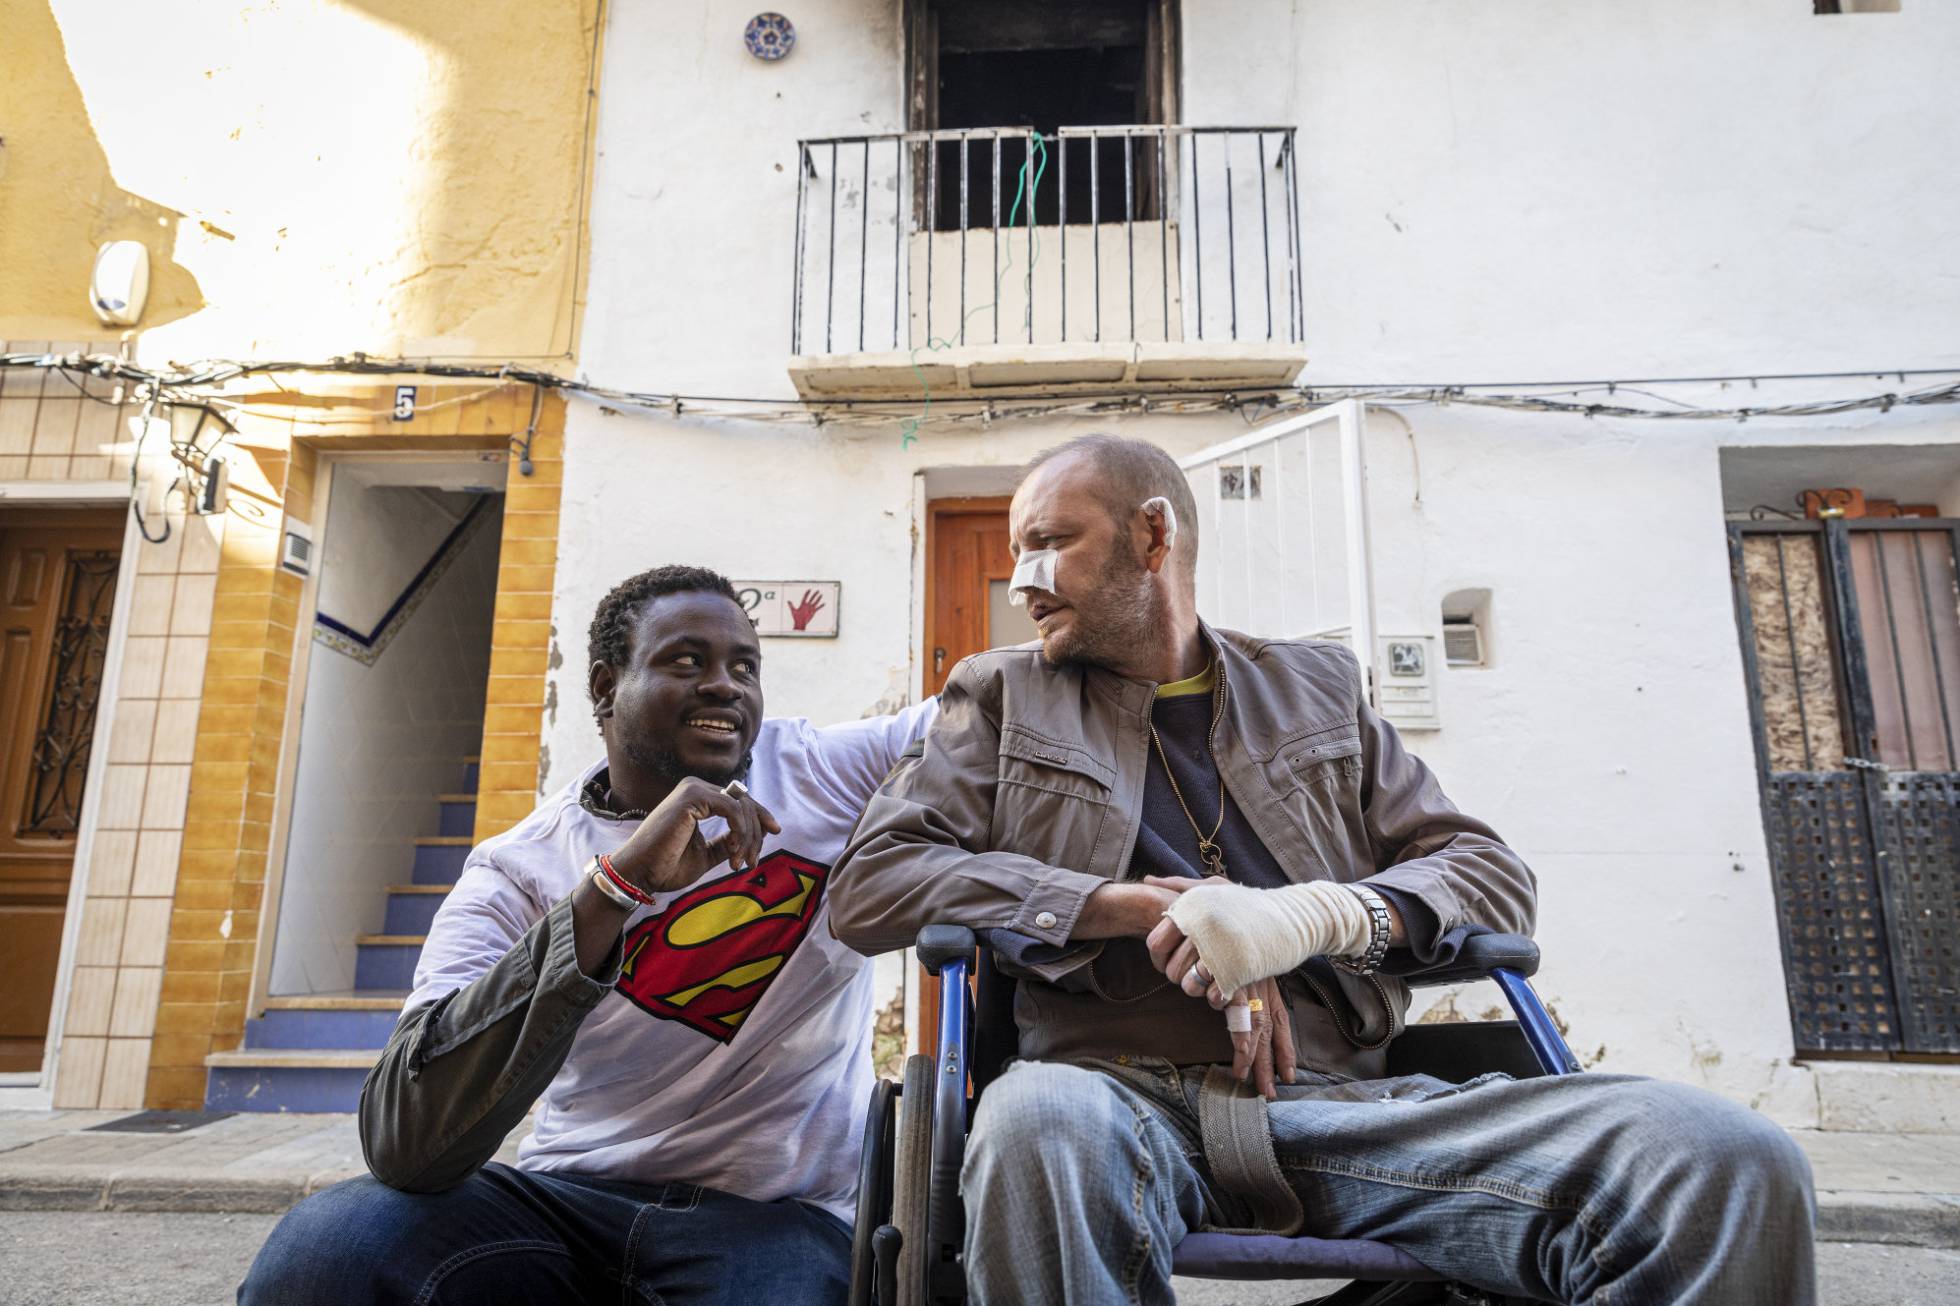 Straatverkoper redt invalide Spanjaard uit brandend huis 18